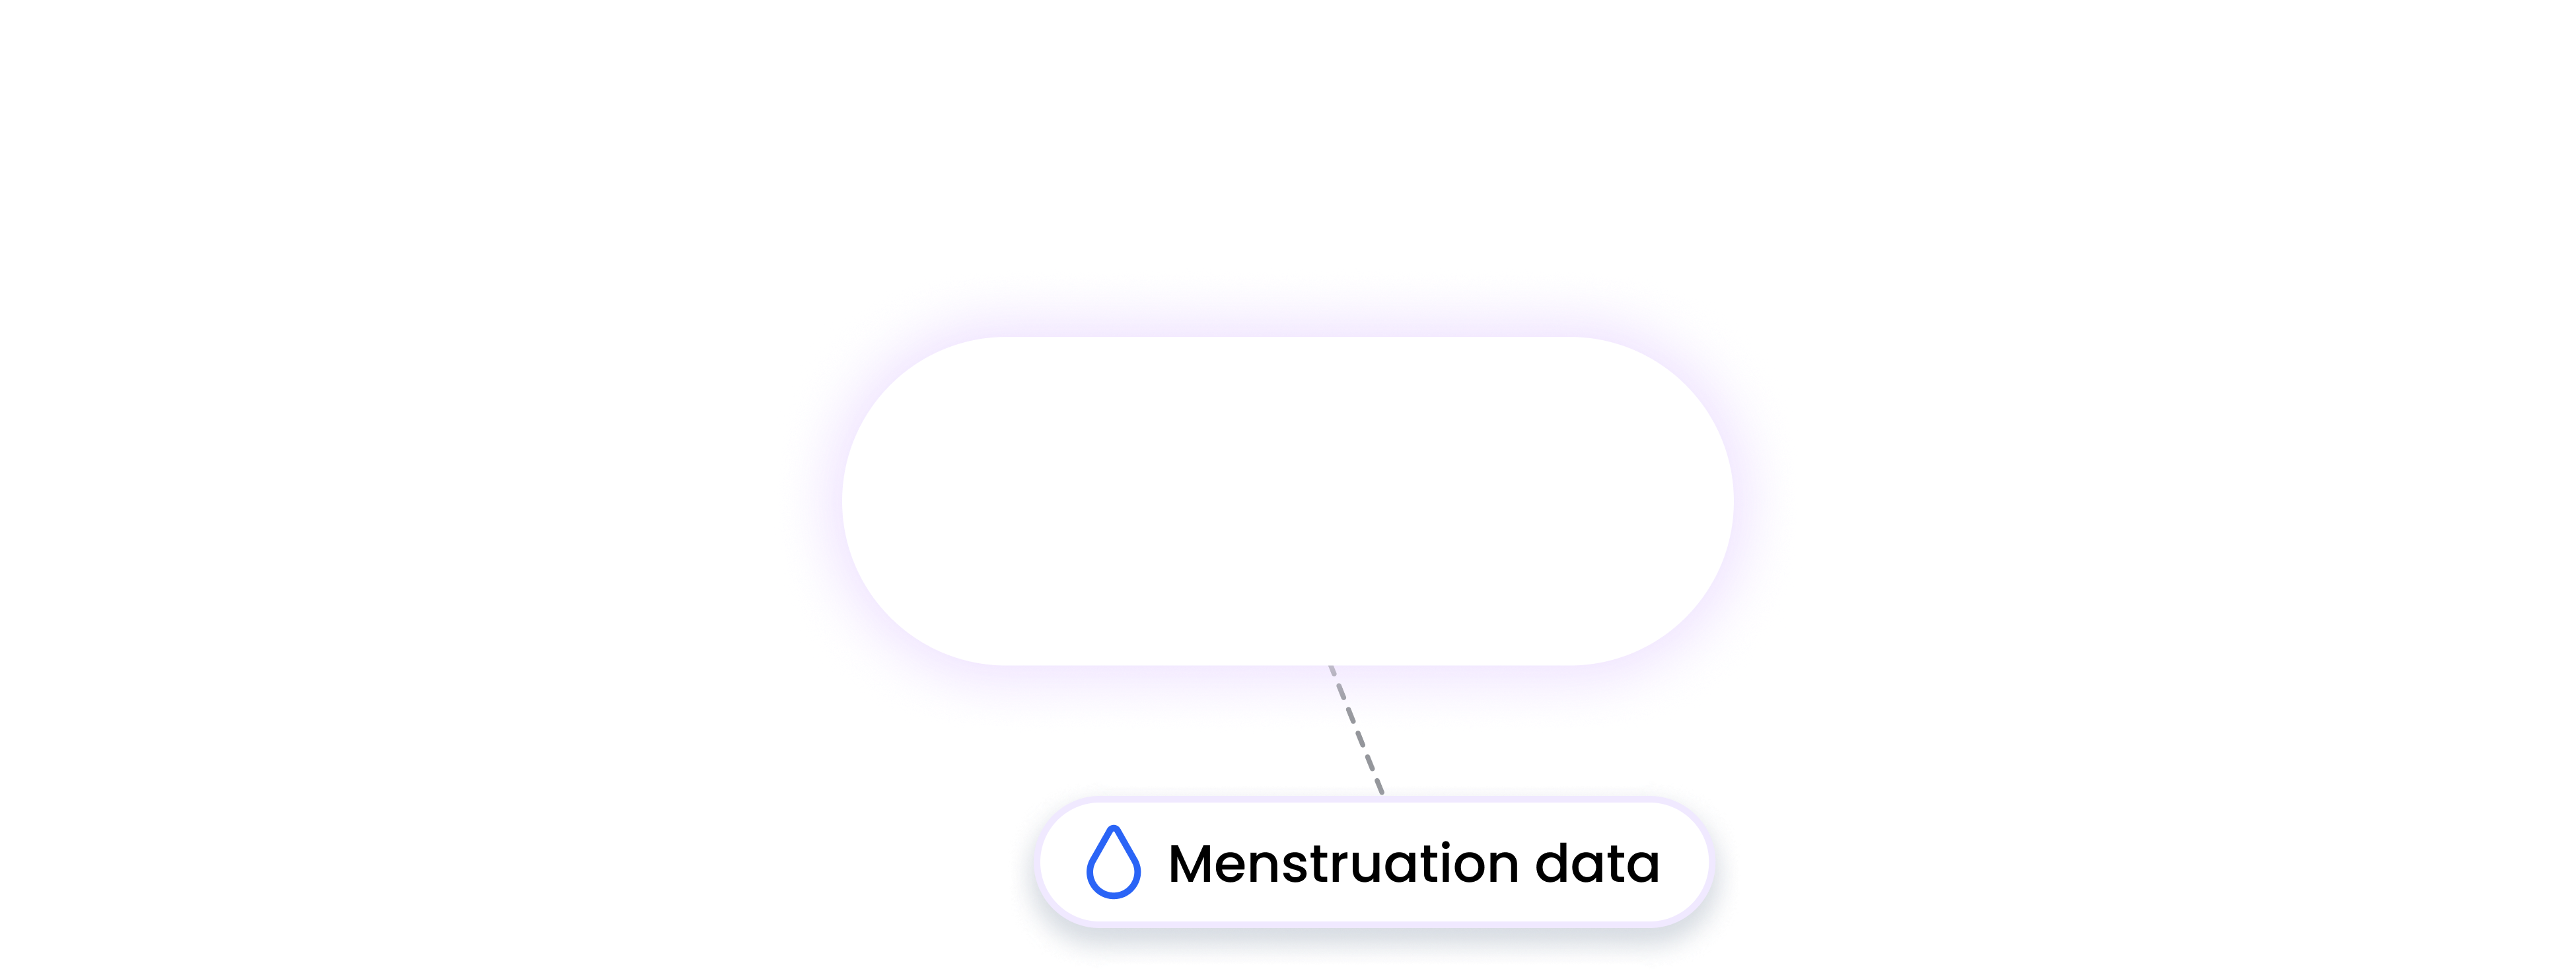 rouvy integration MENSTRUATION data